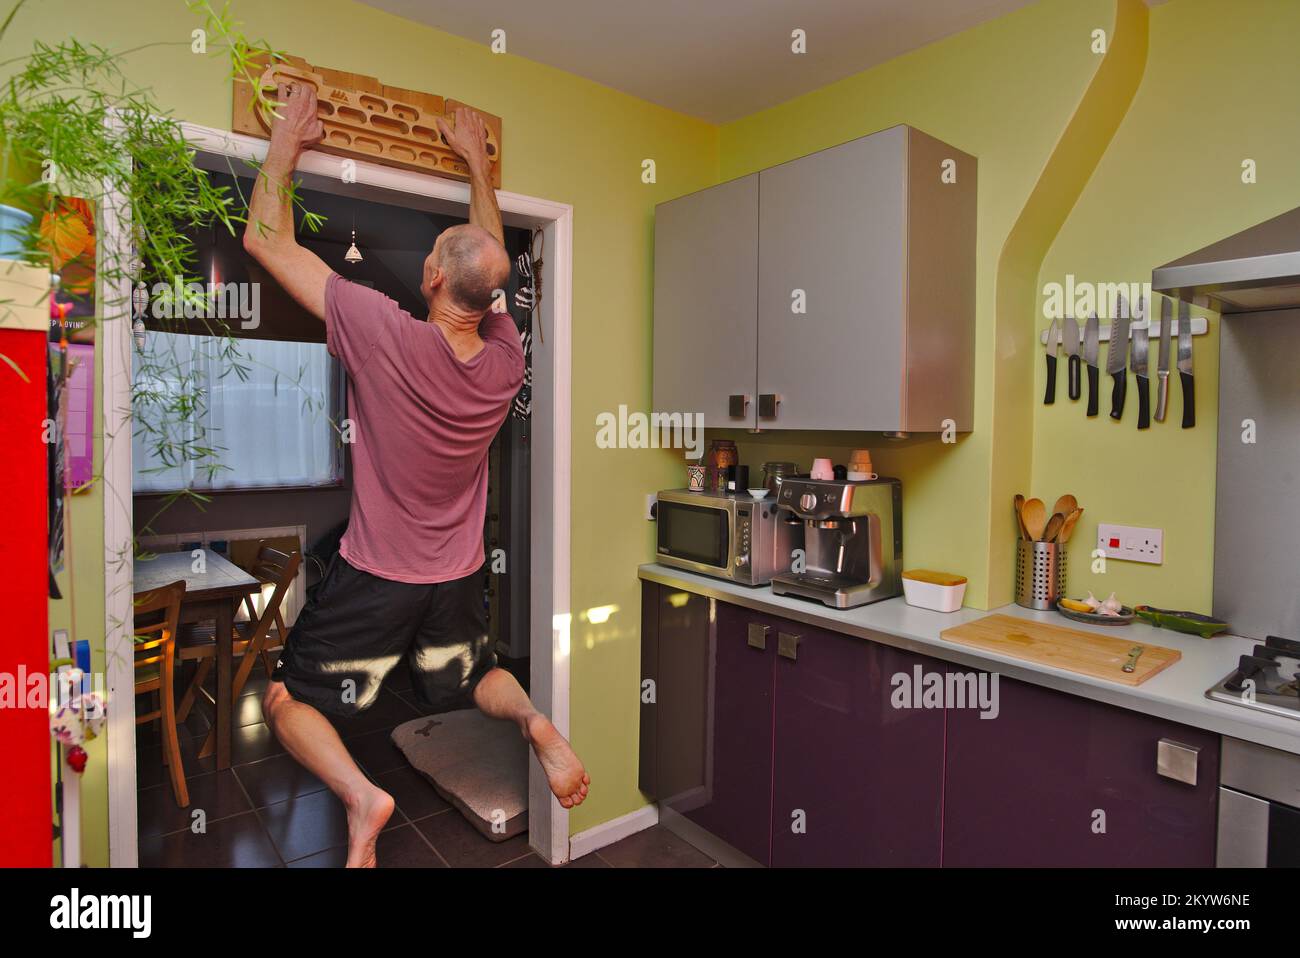 La force de l'homme s'entraîne à la maison à l'aide d'un fingerboard dans sa cuisine. Banque D'Images